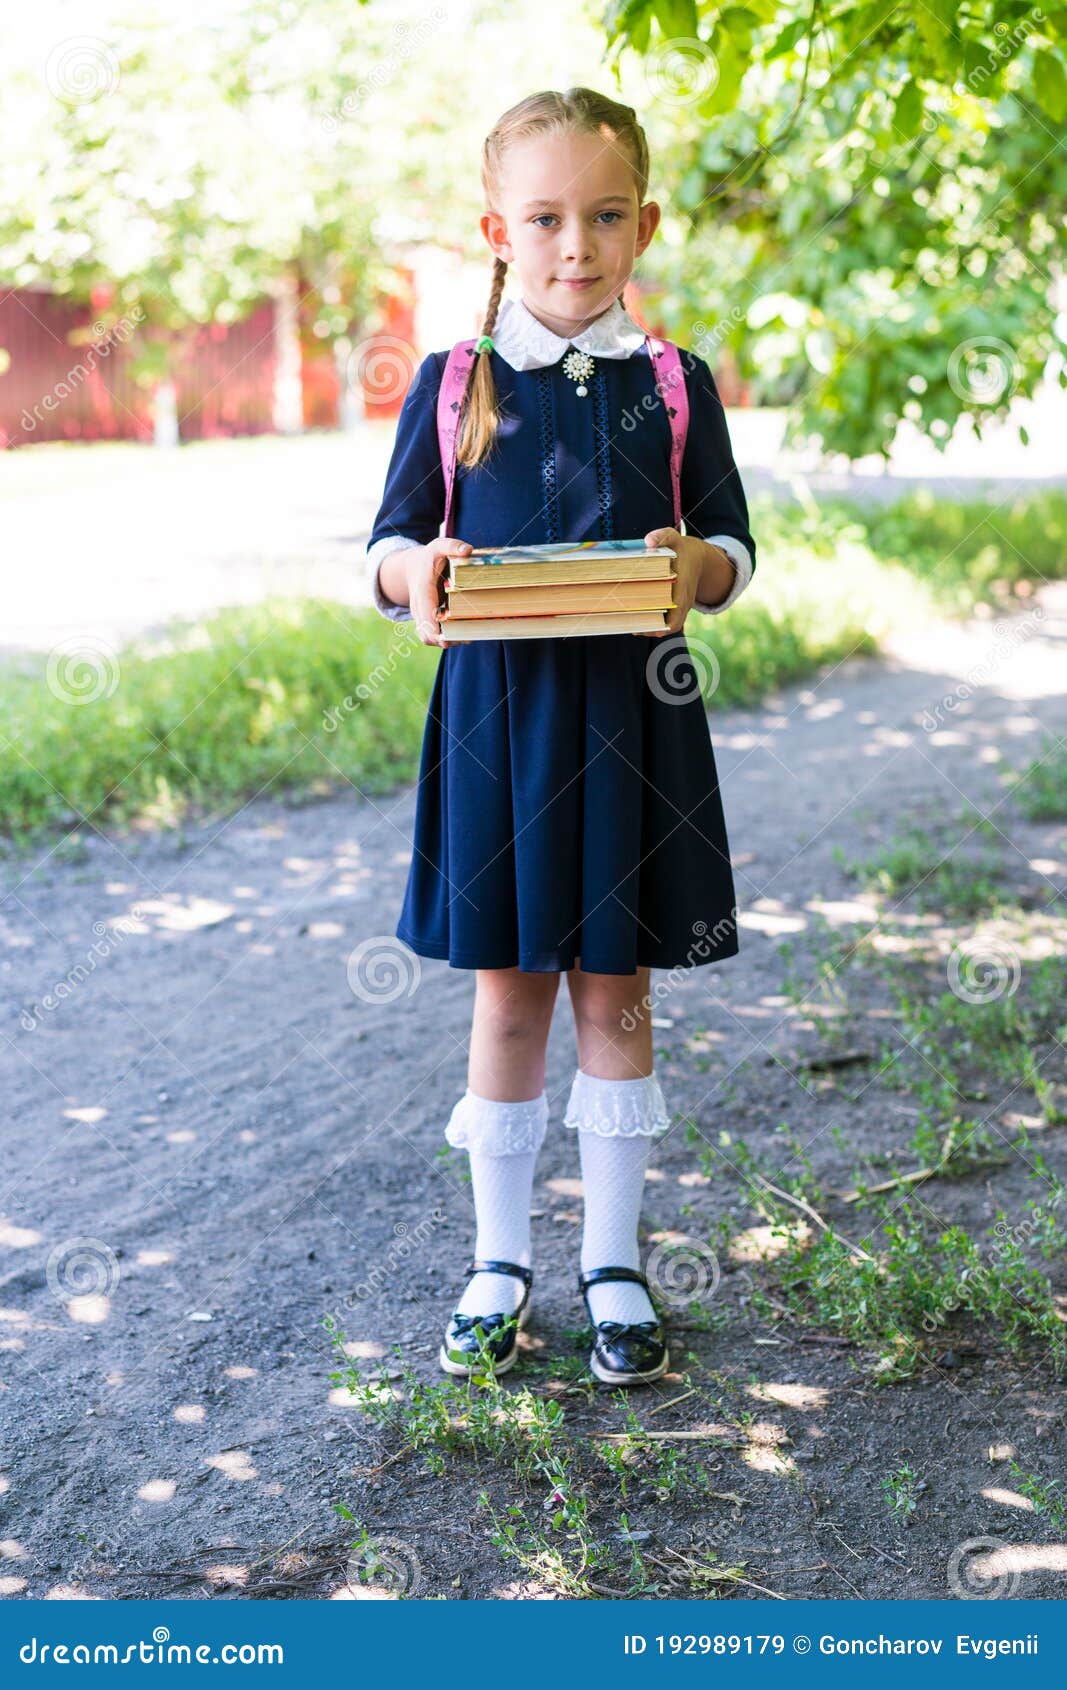 Schoolgirl Holds Books in Her Hands. Stock Image - Image of book, hands ...